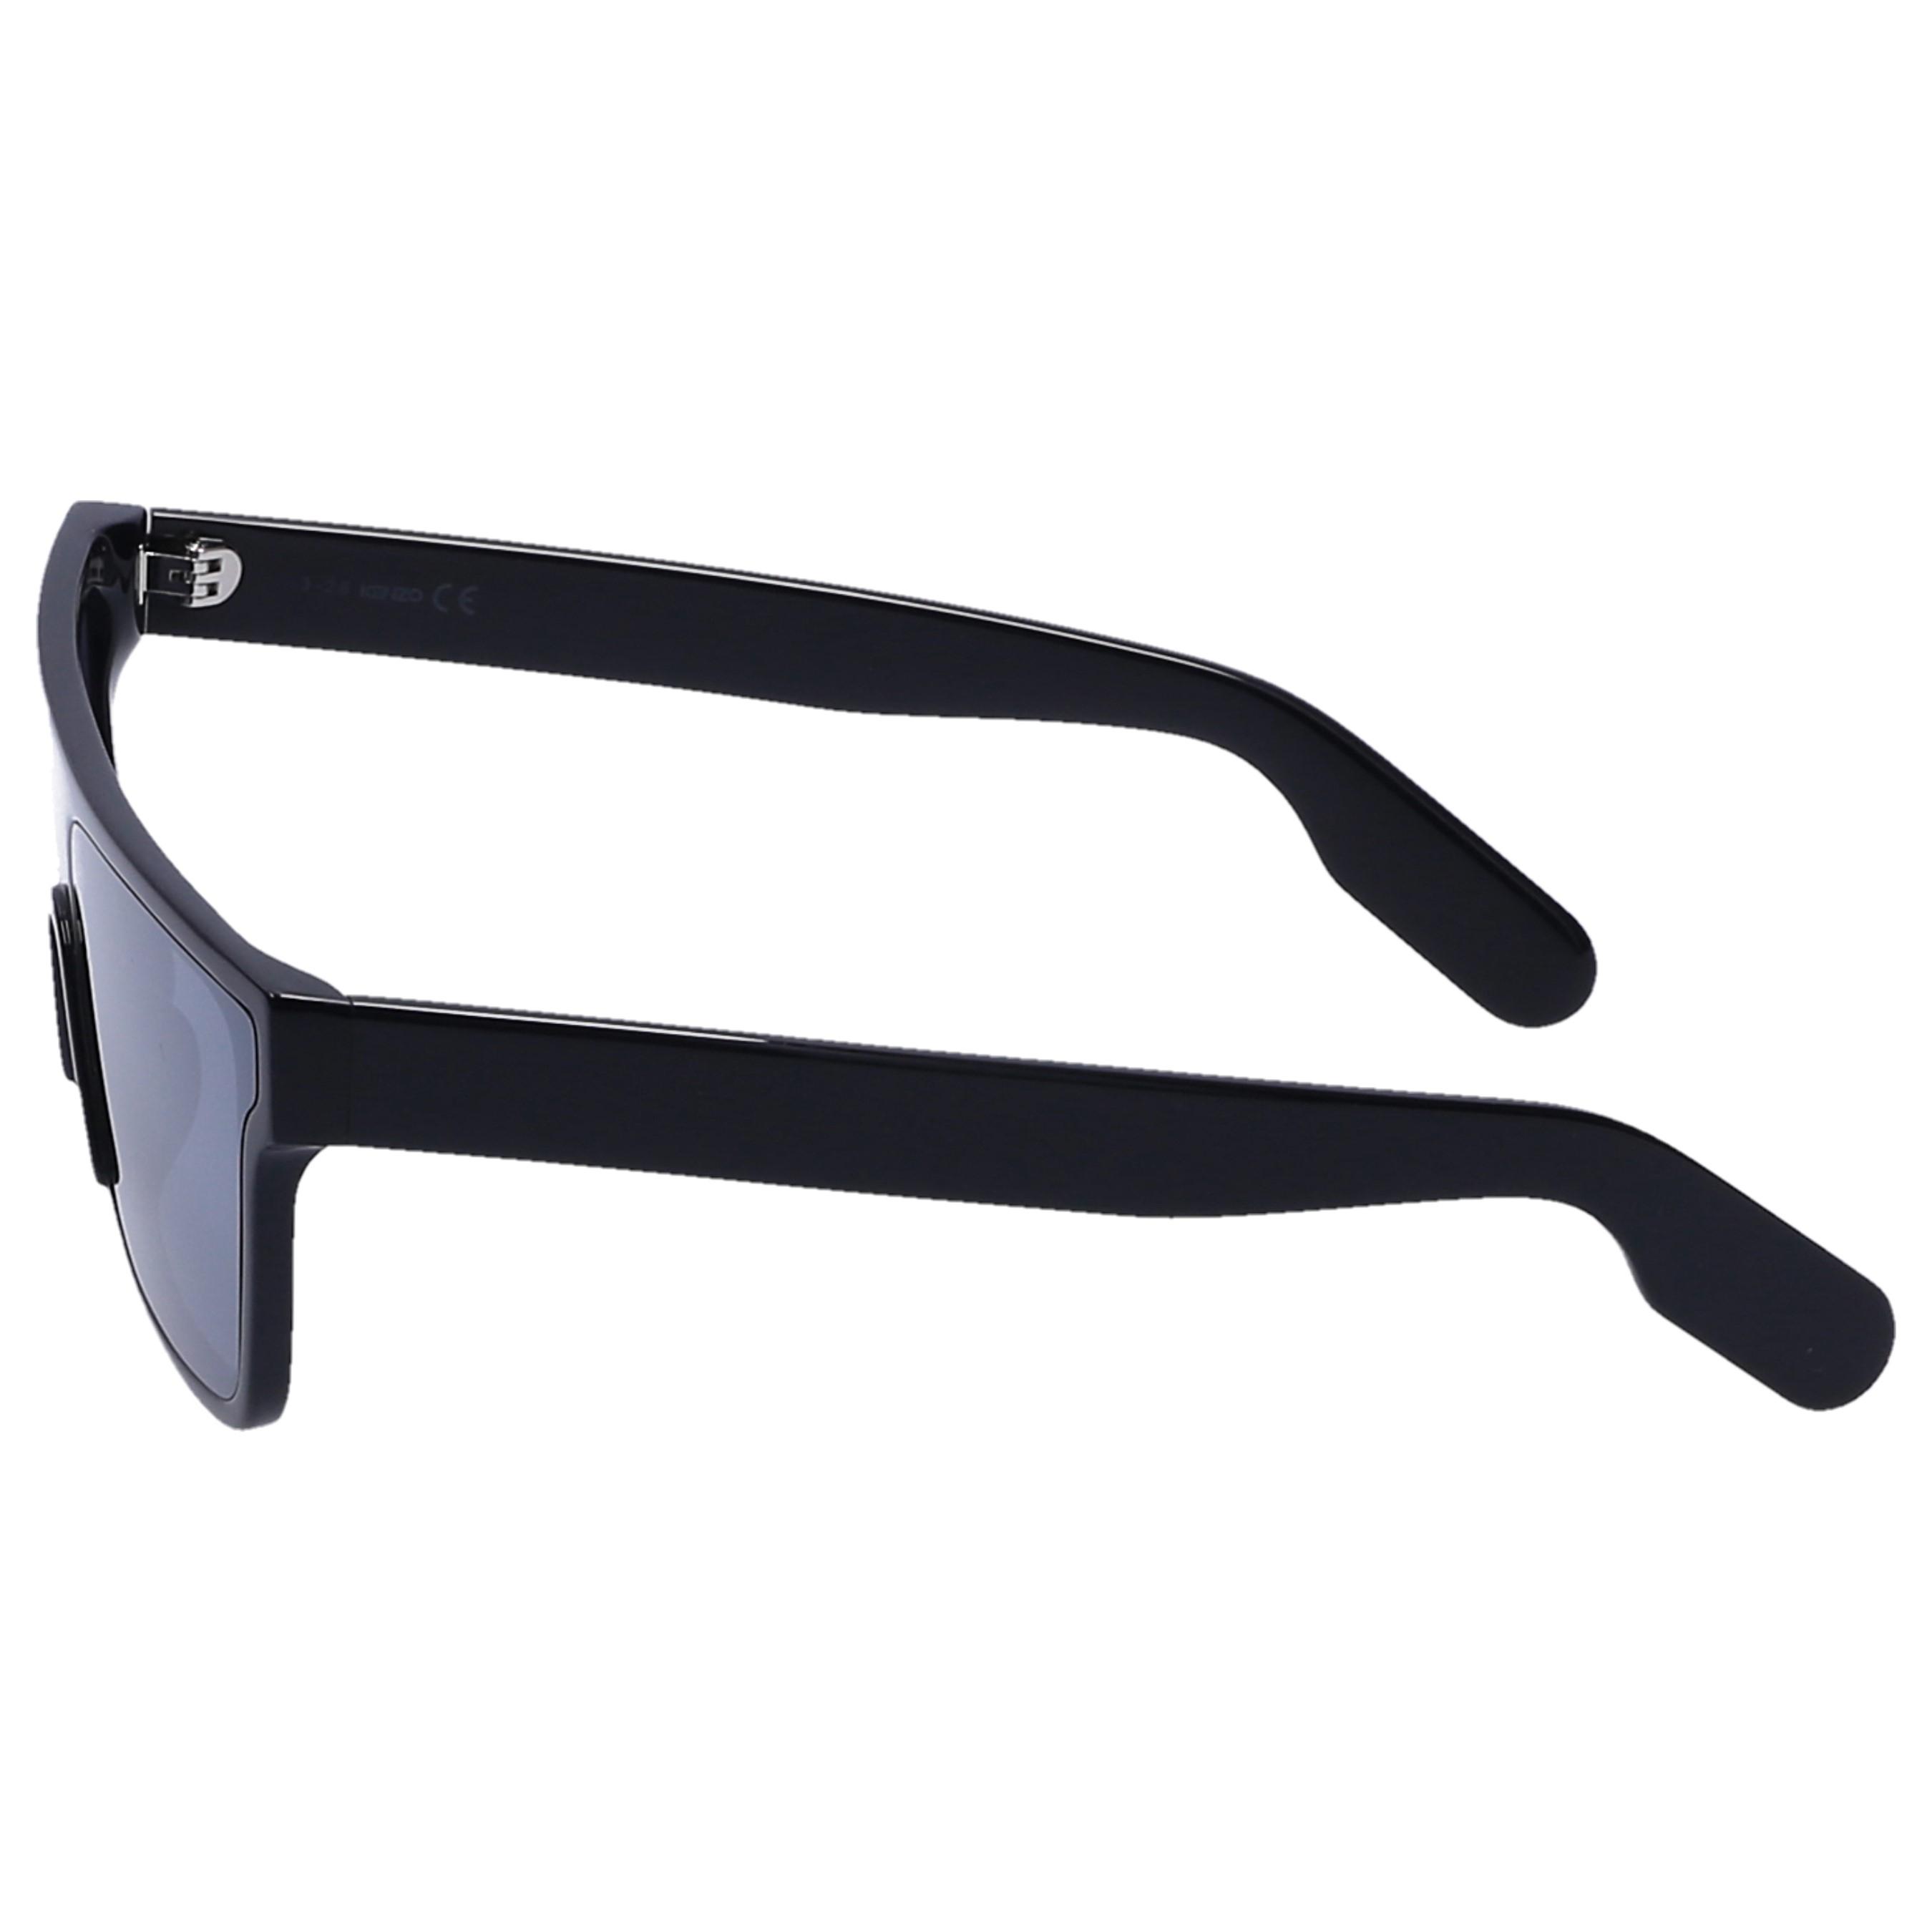 KENZO Sunglasses Wayfarer 40009i 01c Acetate Black in Black for Men - Lyst